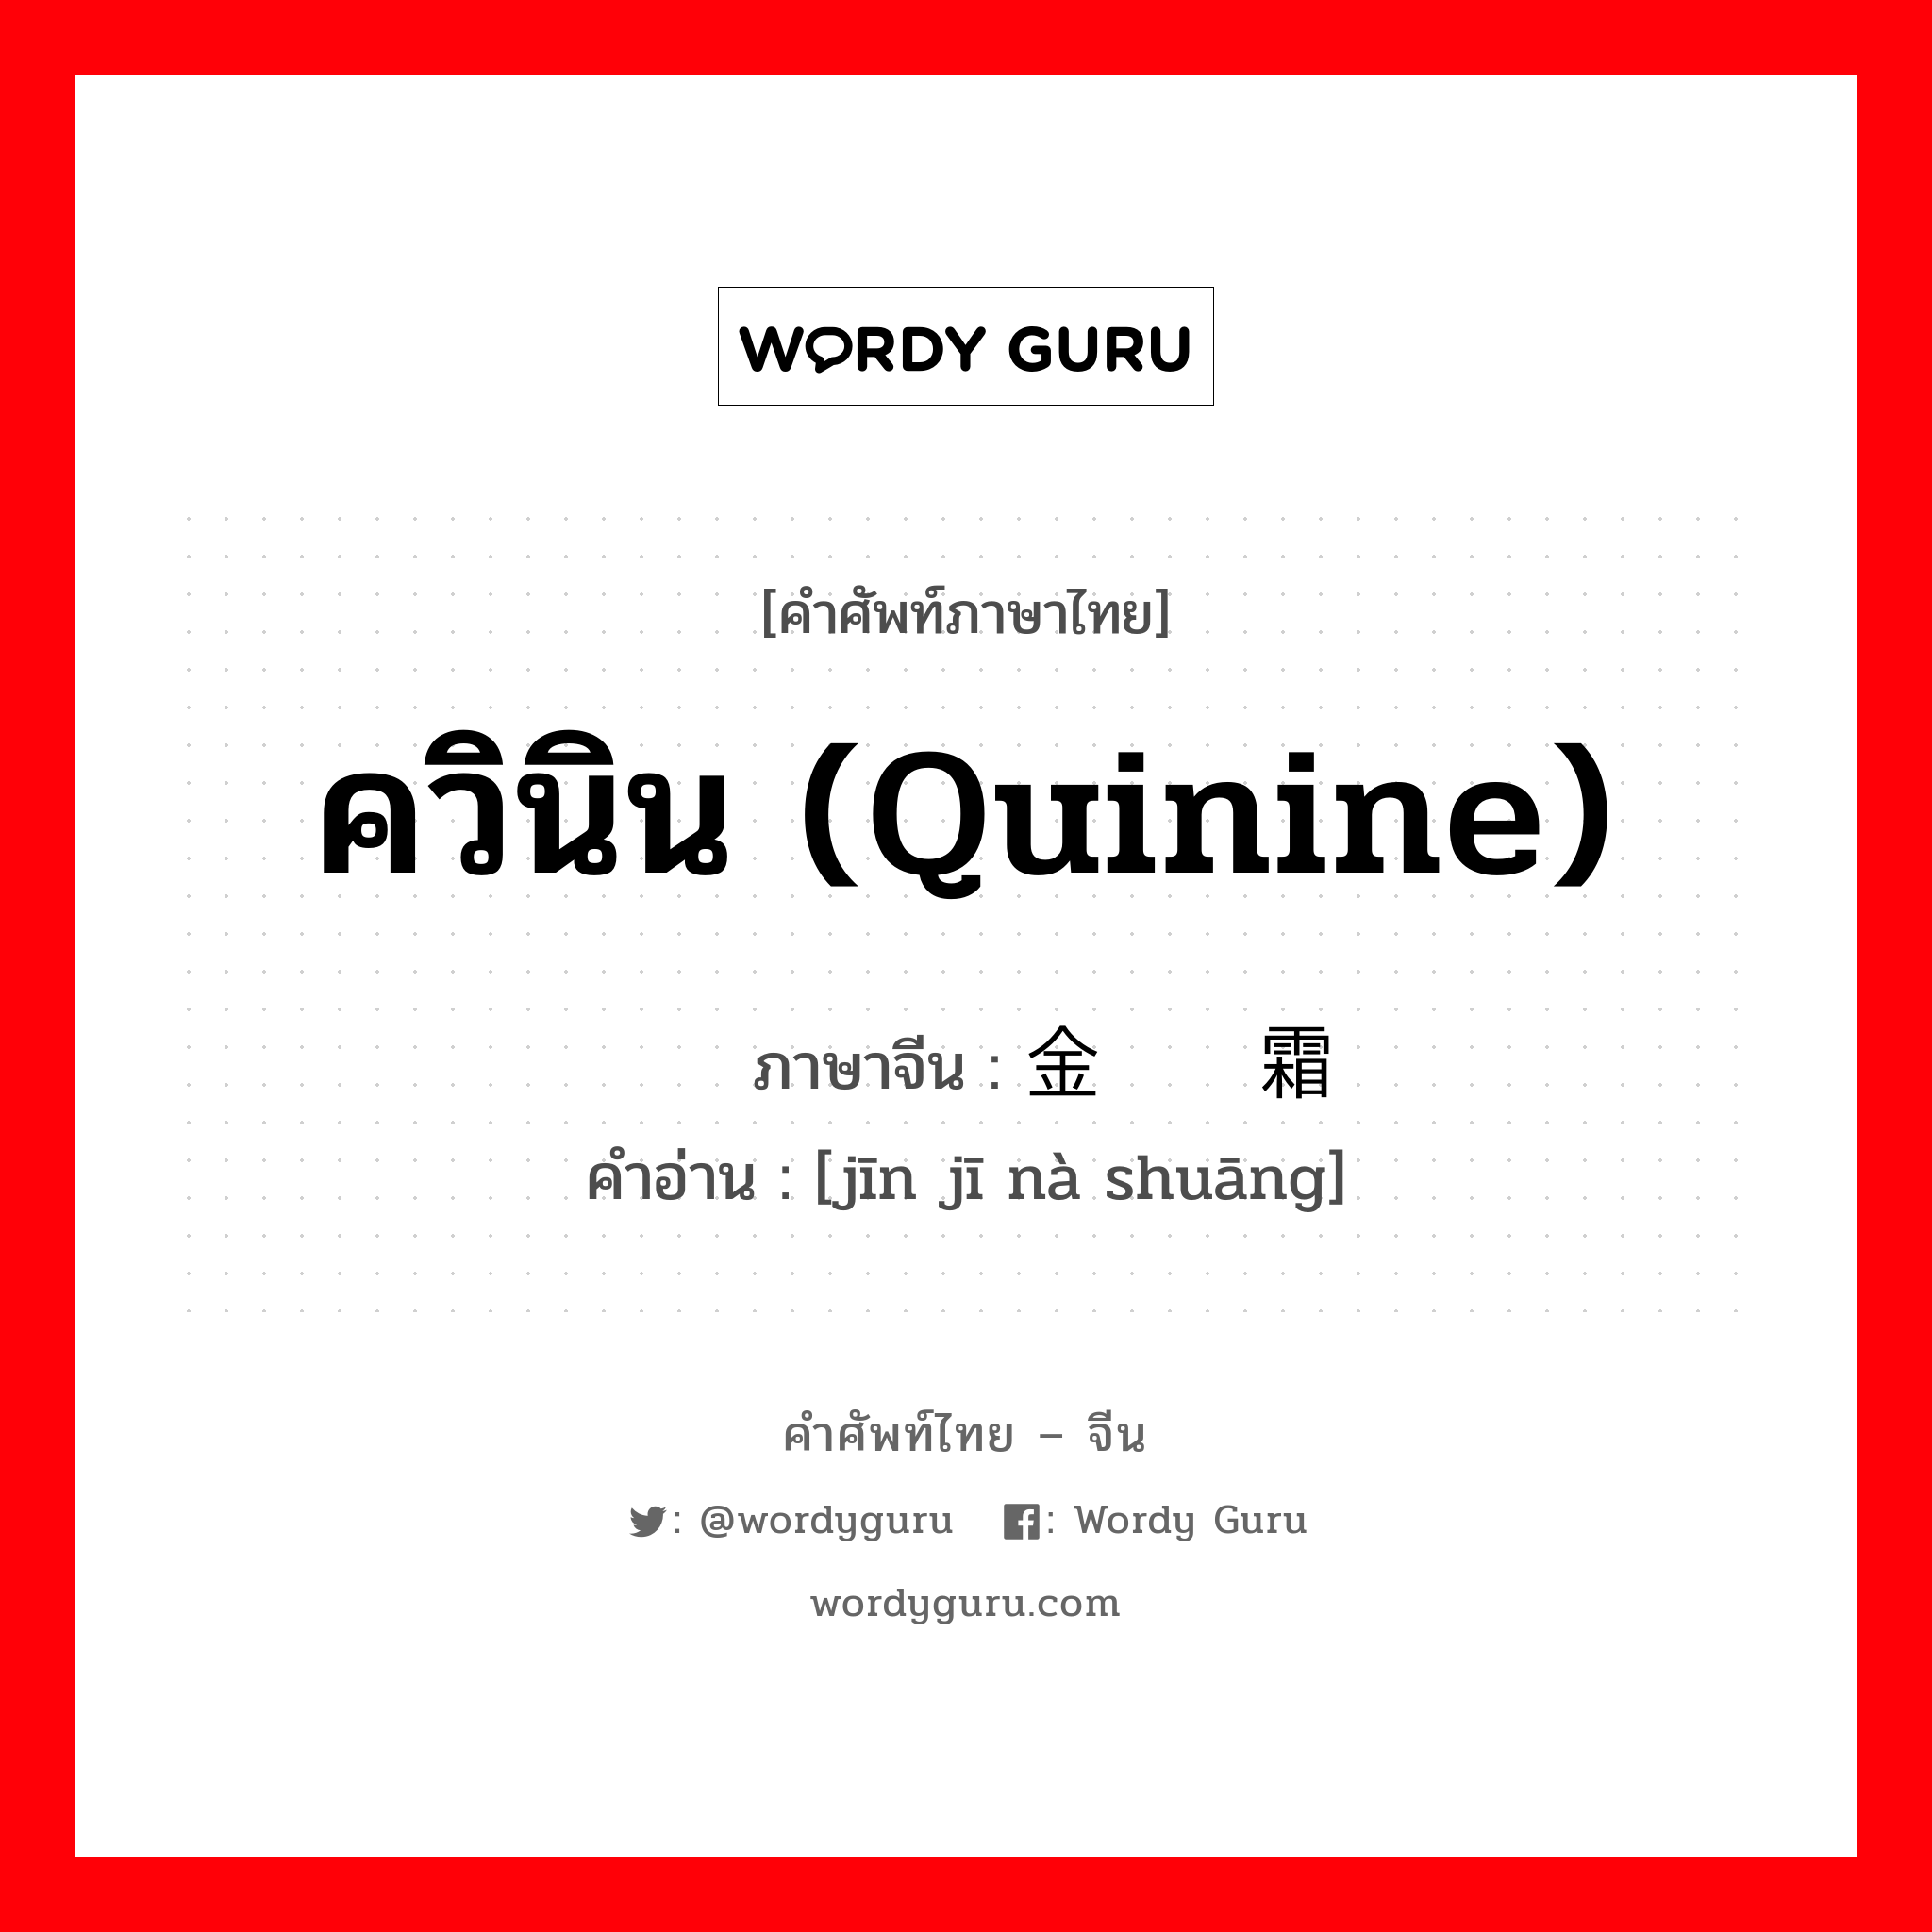 ควินิน (quinine) ภาษาจีนคืออะไร, คำศัพท์ภาษาไทย - จีน ควินิน (quinine) ภาษาจีน 金鸡纳霜 คำอ่าน [jīn jī nà shuāng]